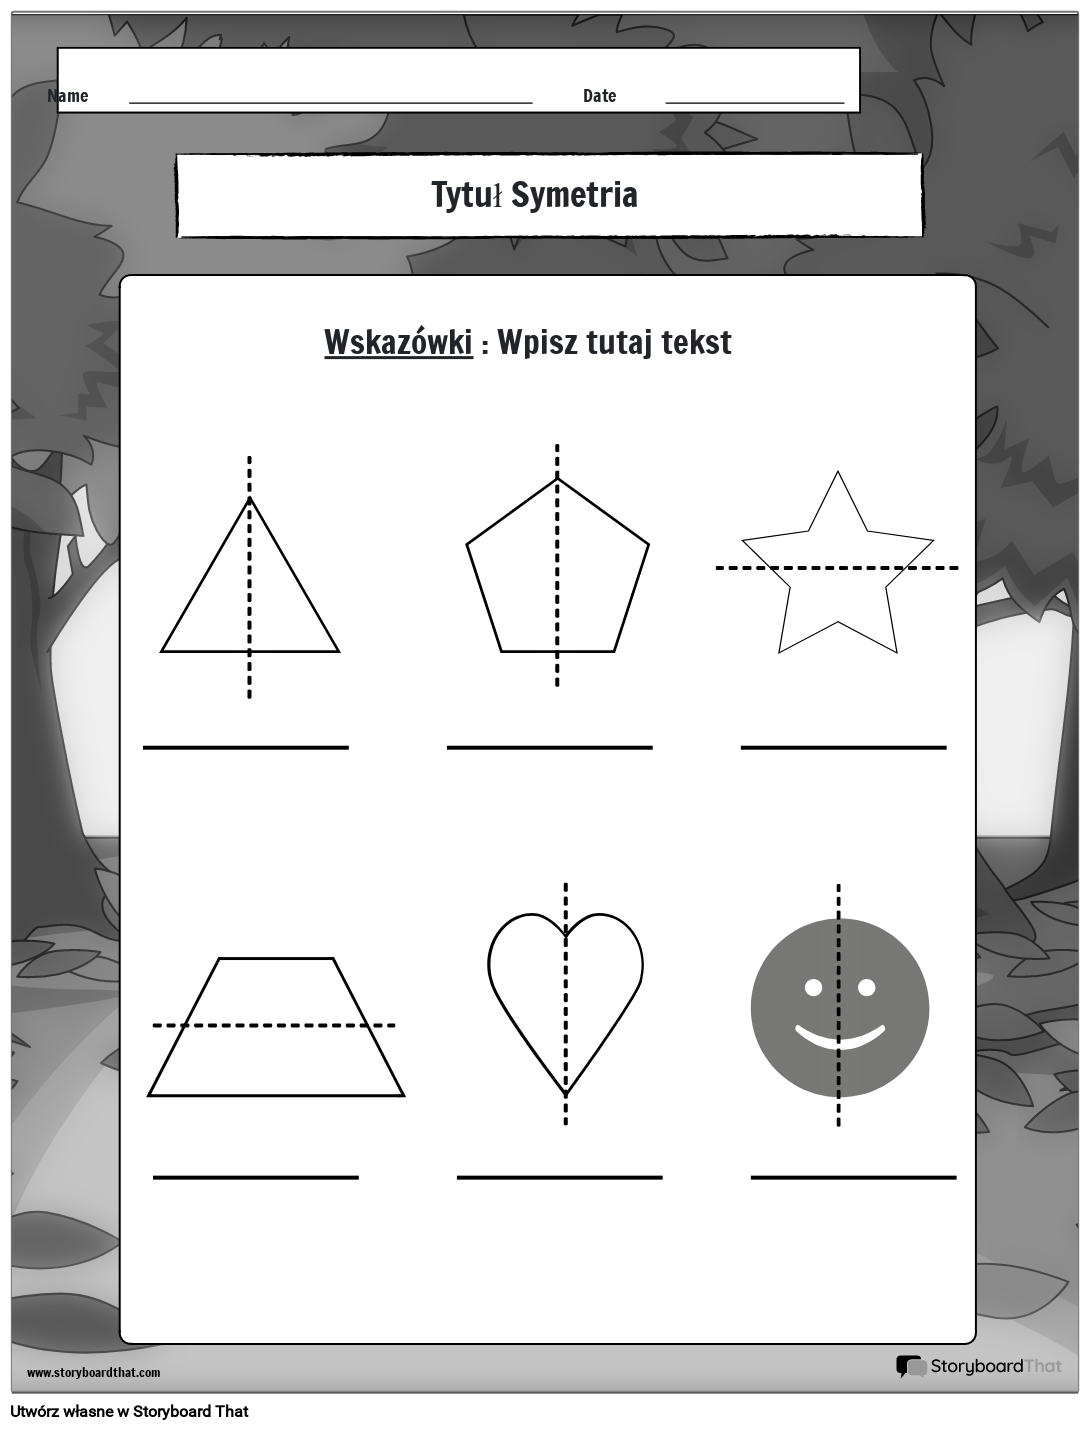 arkusz symetrii jest czarno-biały